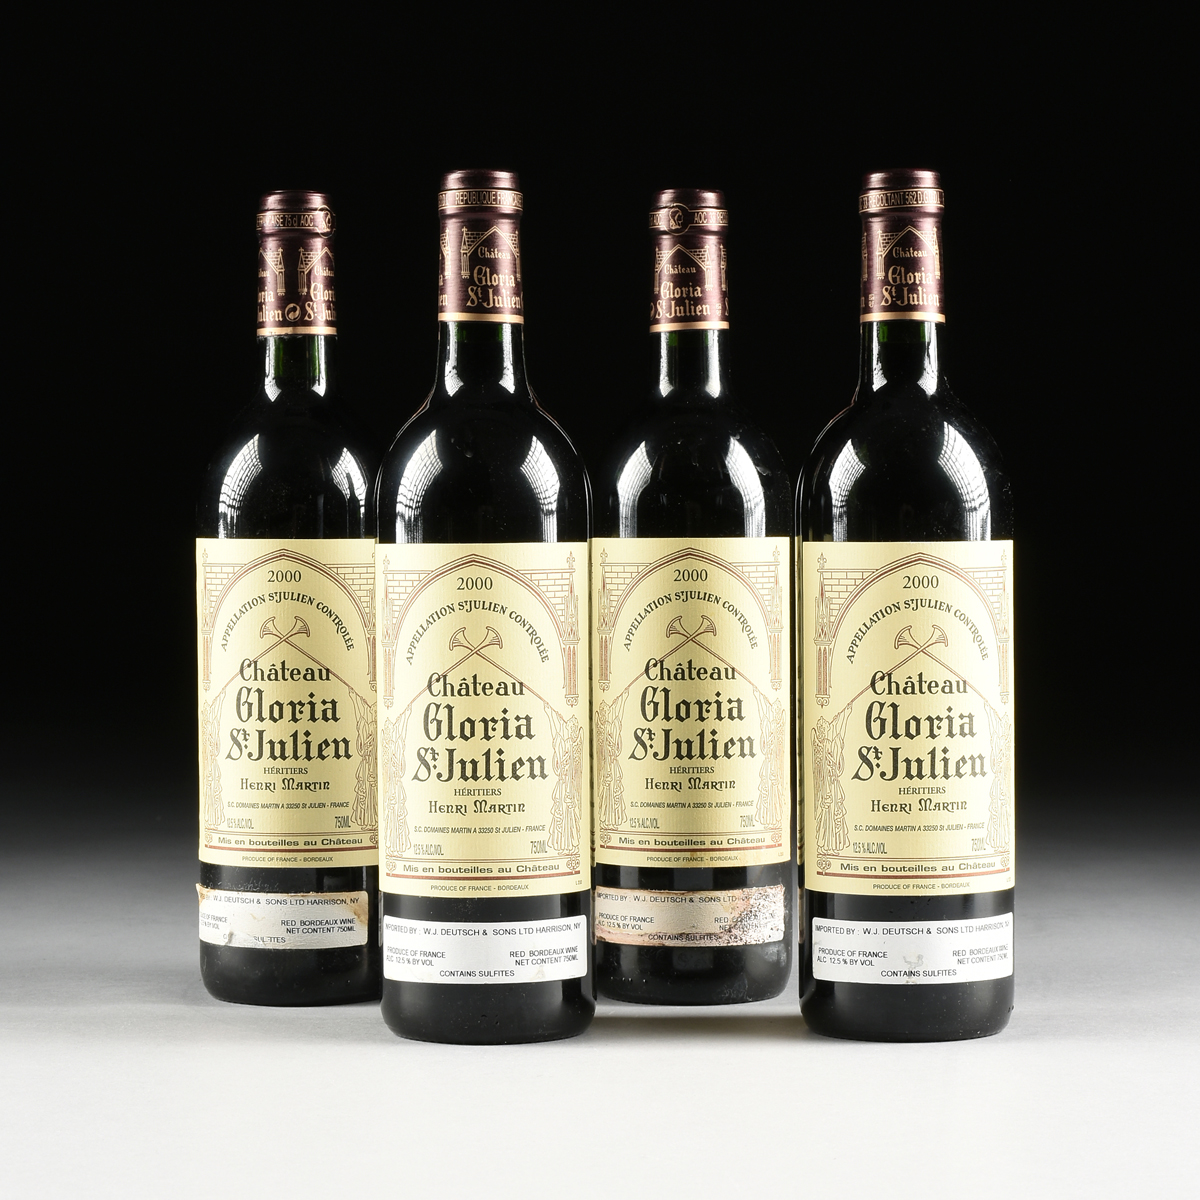 FOUR BOTTLES OF 2000 CHATEAU GLORIA ST. JULIEN, BORDEAUX BLEND, FRANCE, 750ml bottles. Condition: